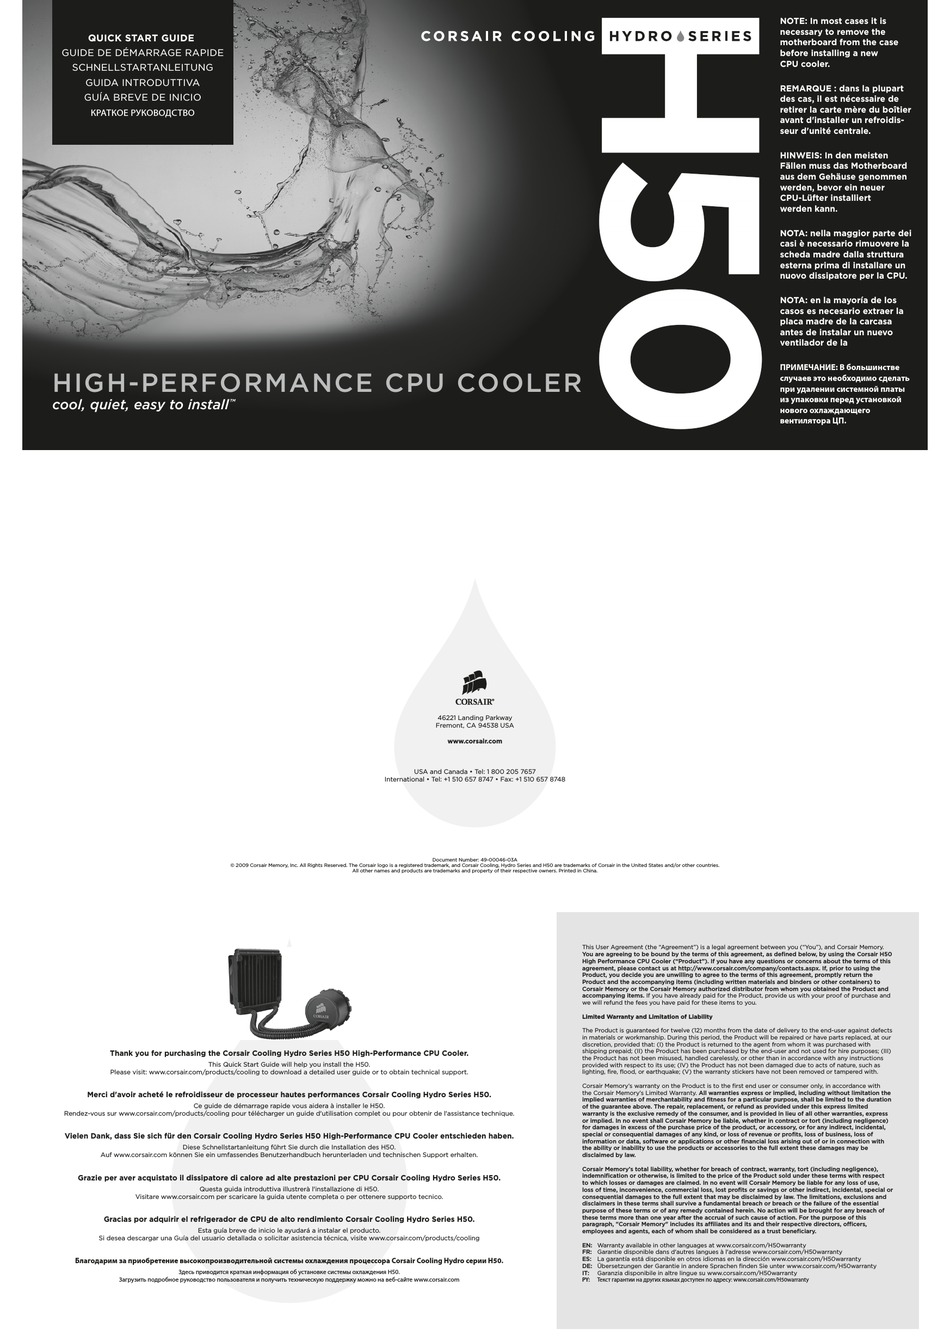 corsair h50 liquid cooling install